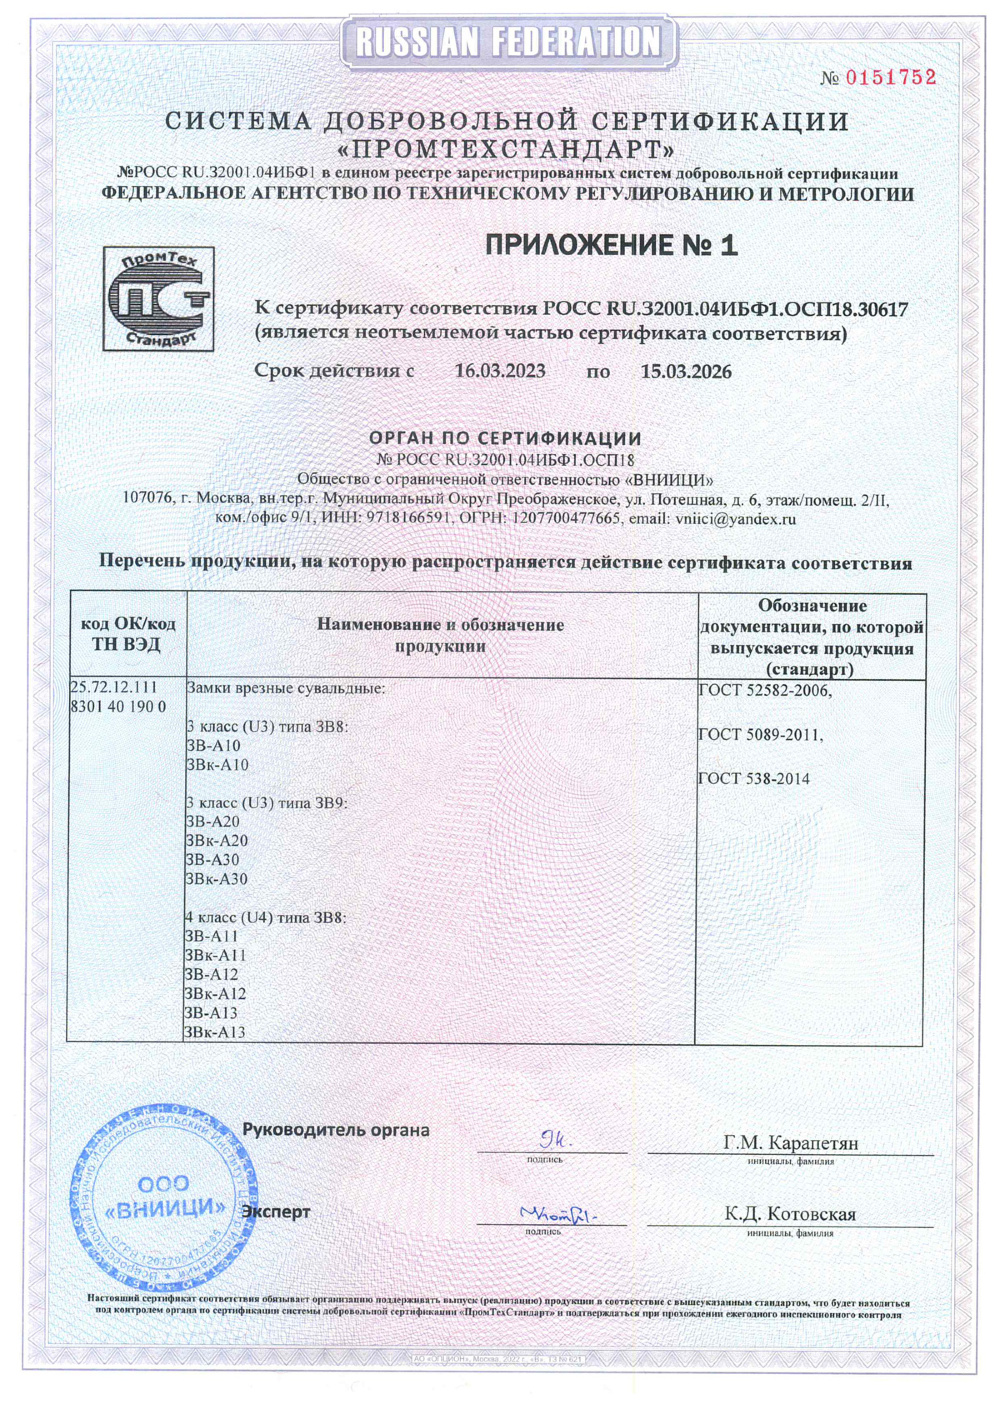 сертификат соответствия для замка А10 стр2